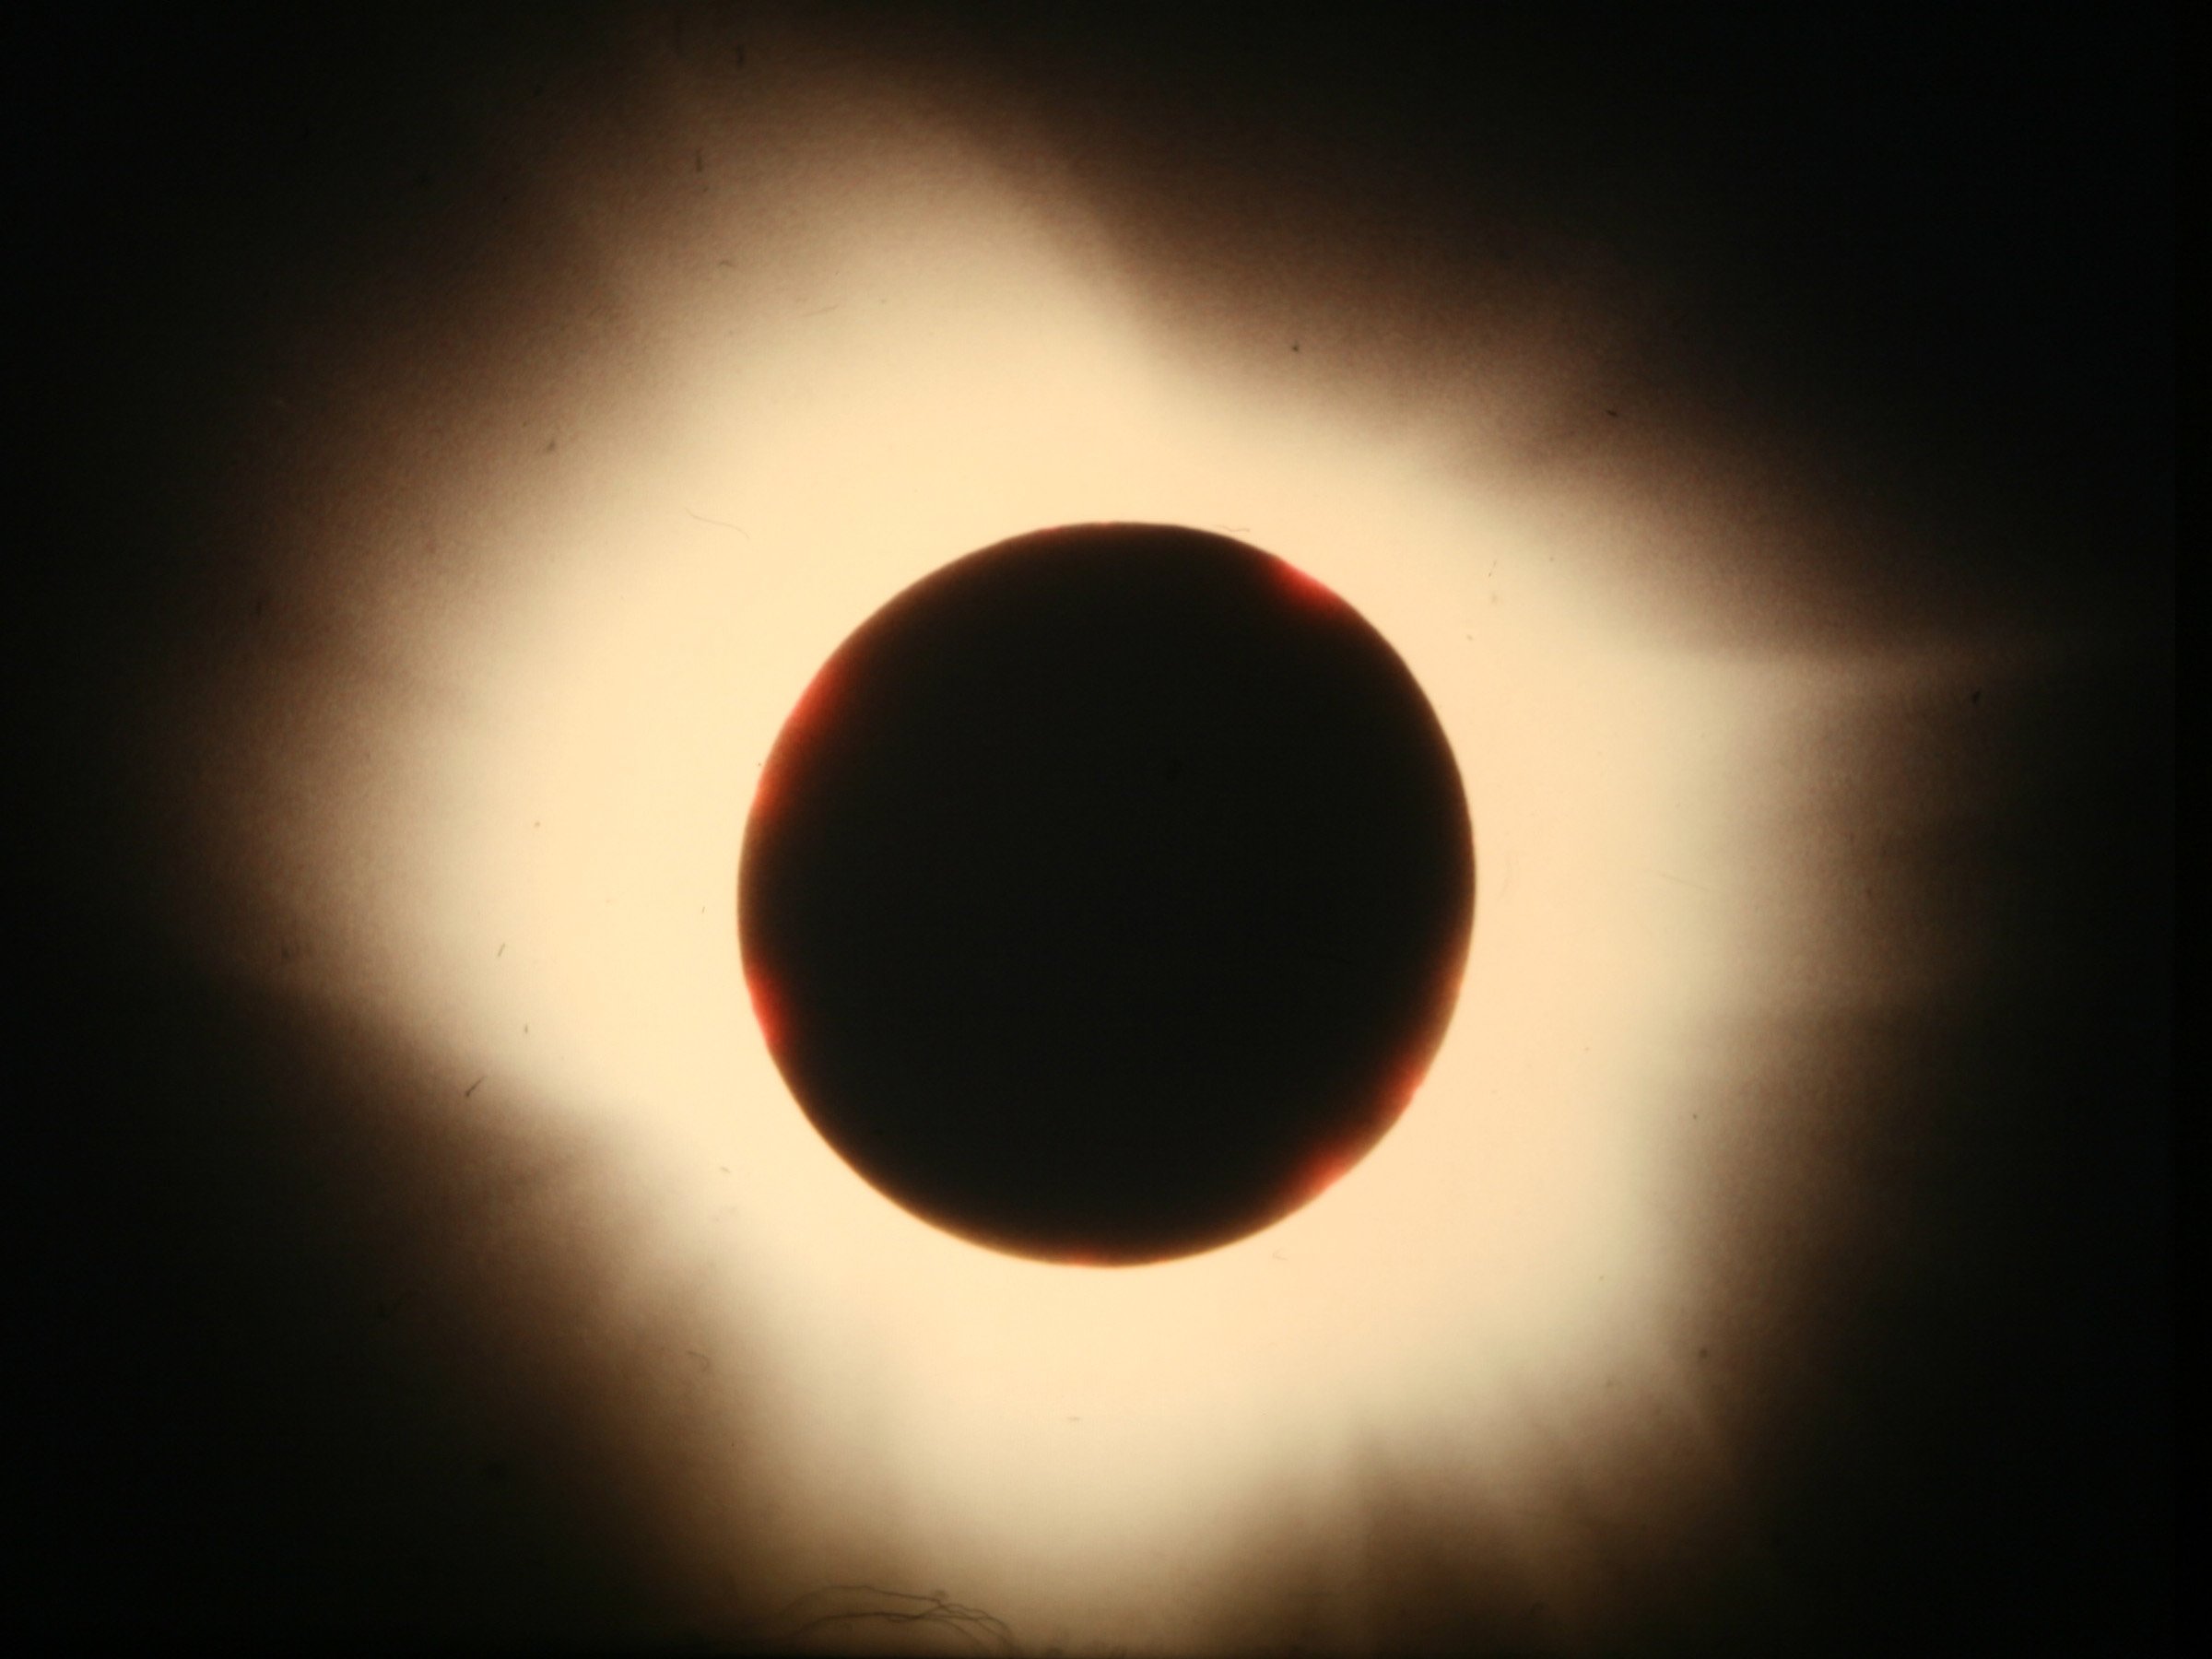 2 солнечная корона. Солнечное затмение корона. Солнечное затмение 31 июля 1981 г.. Солнечное затмение корона солнца. Солнечная корона солнца.